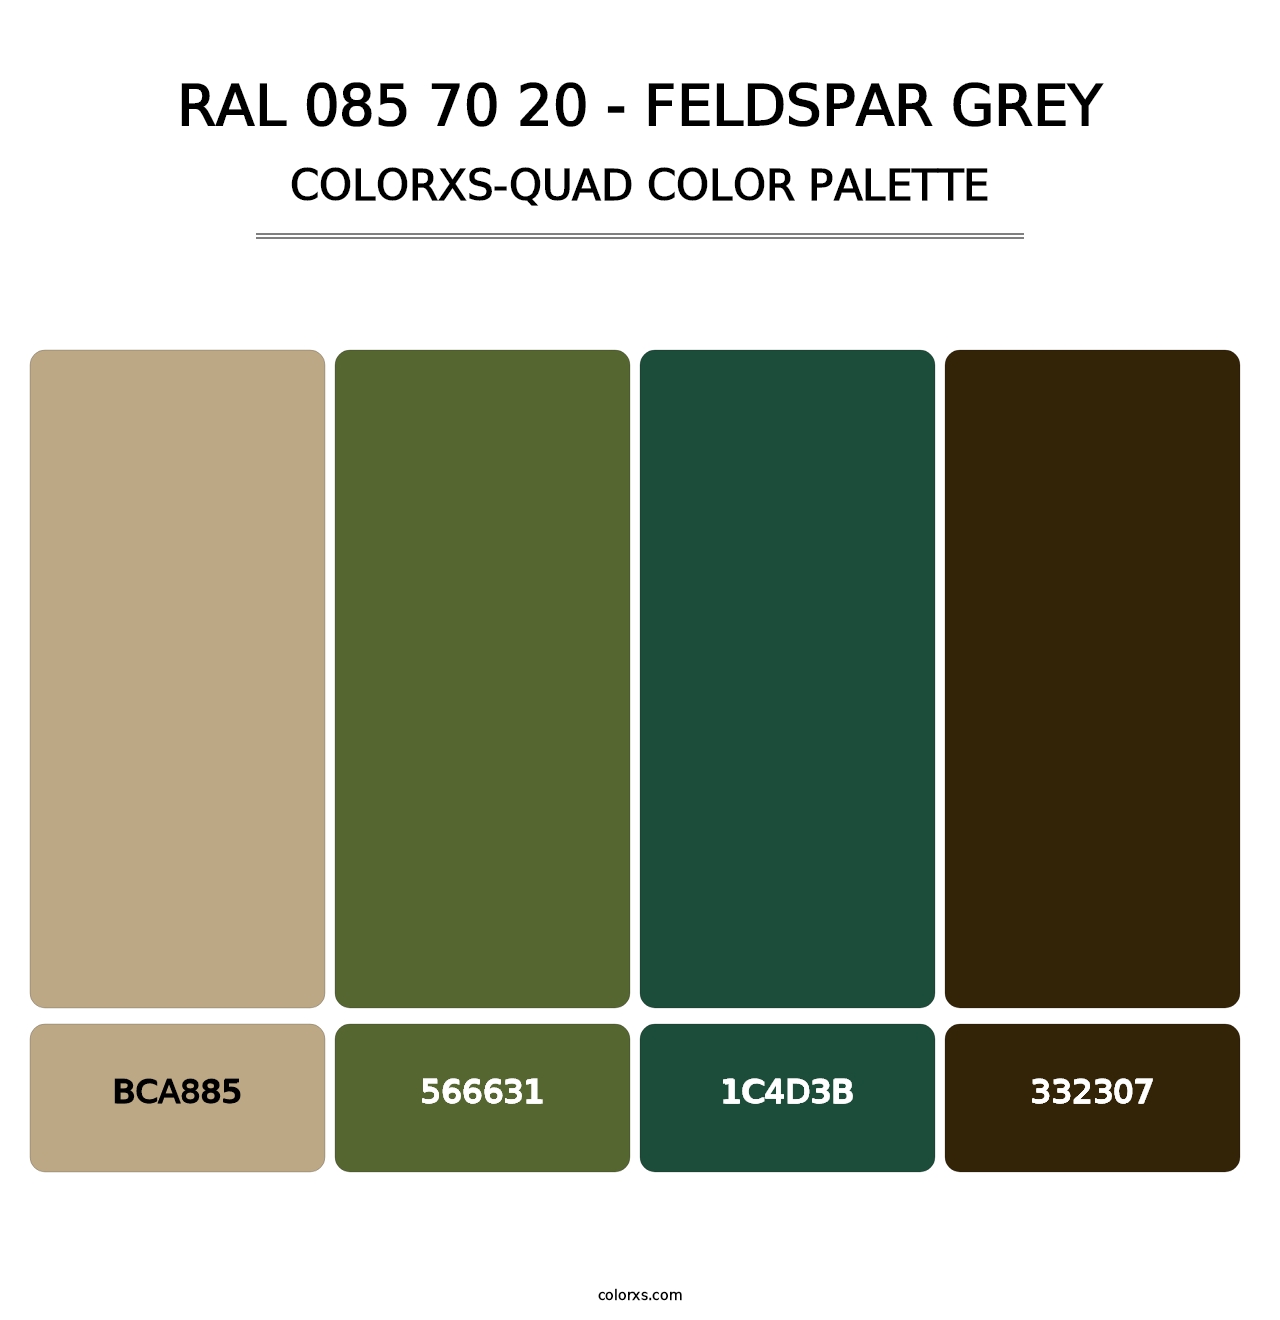 RAL 085 70 20 - Feldspar Grey - Colorxs Quad Palette